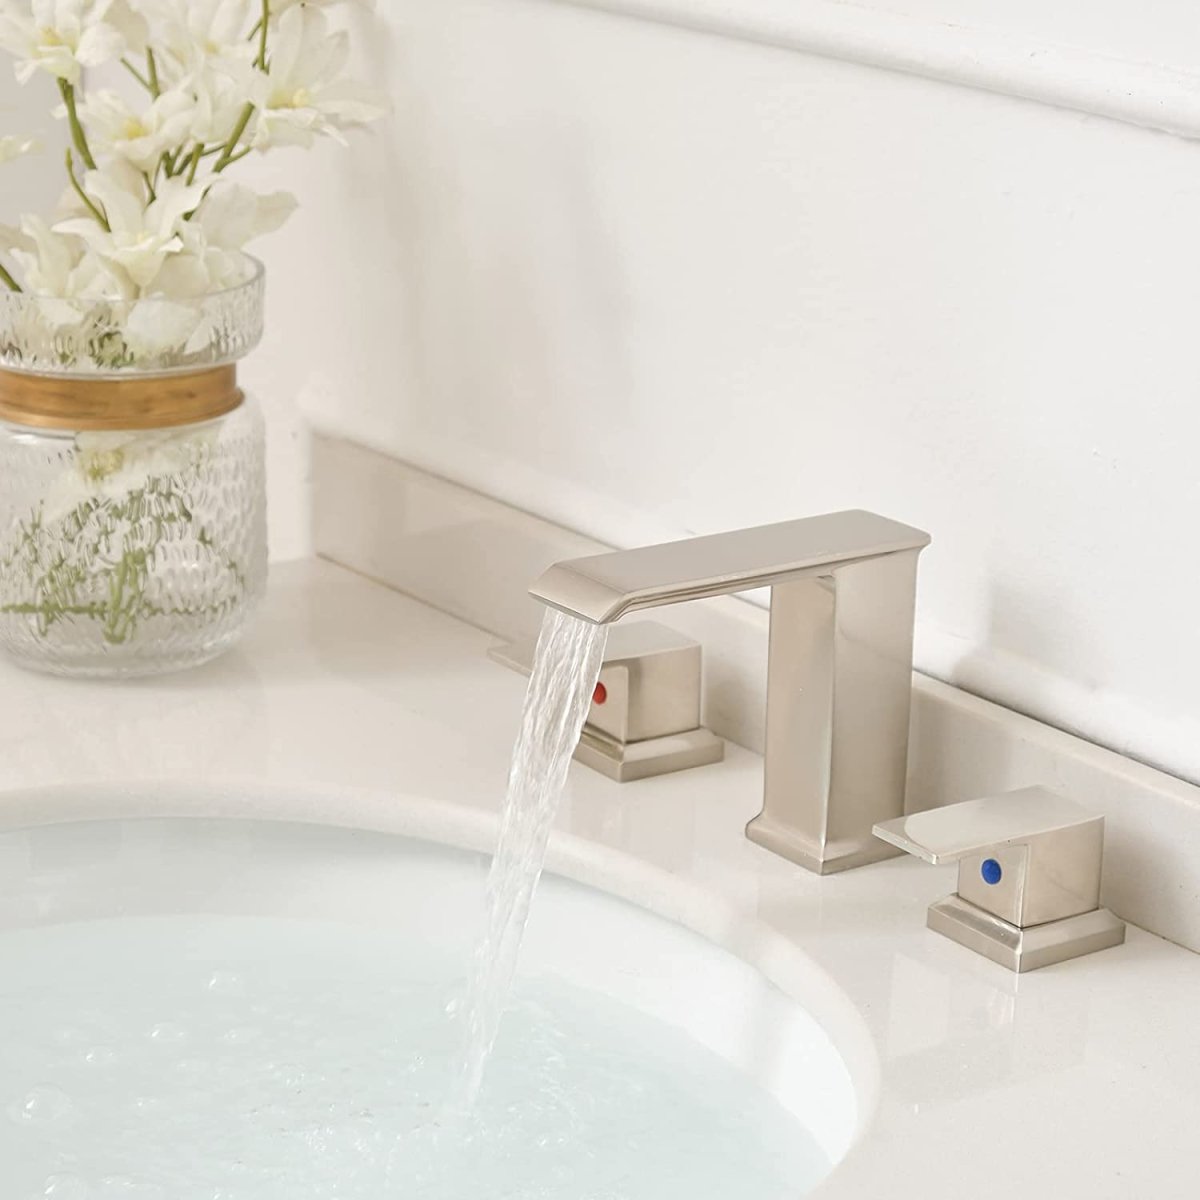 8 in Waterfall Widespread 2-Handle Bathroom Faucet Nickel - buyfaucet.com